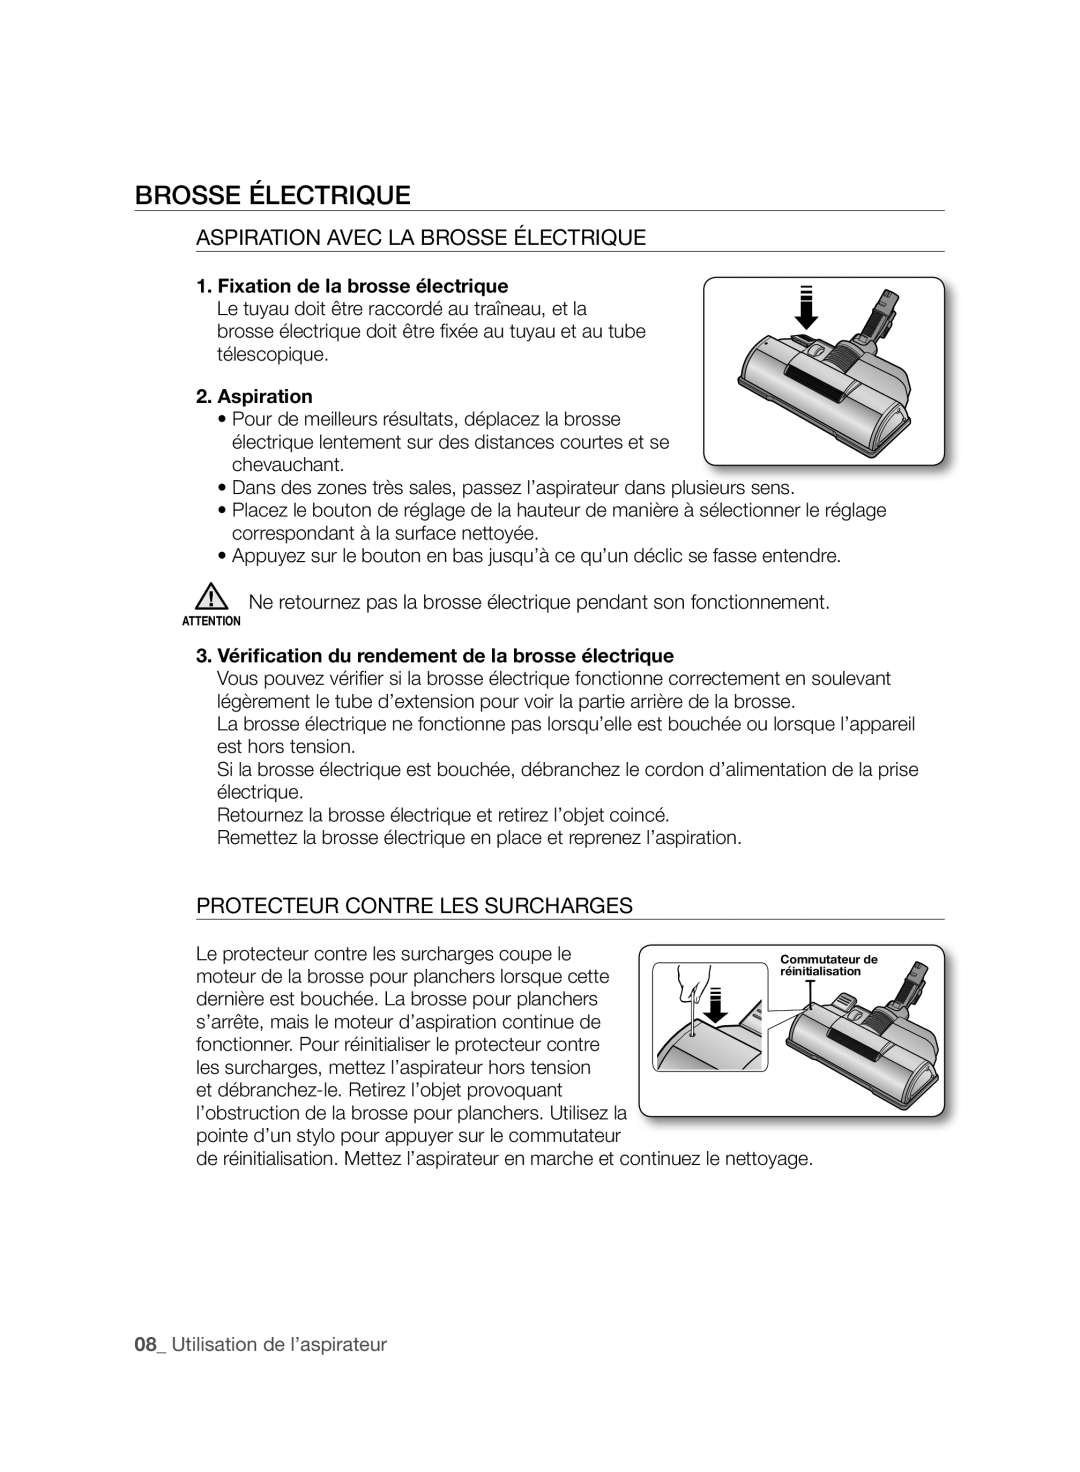 Samsung VCC96P0H1G user manual Aspiration Avec La Brosse Électrique, Protecteur Contre Les Surcharges 